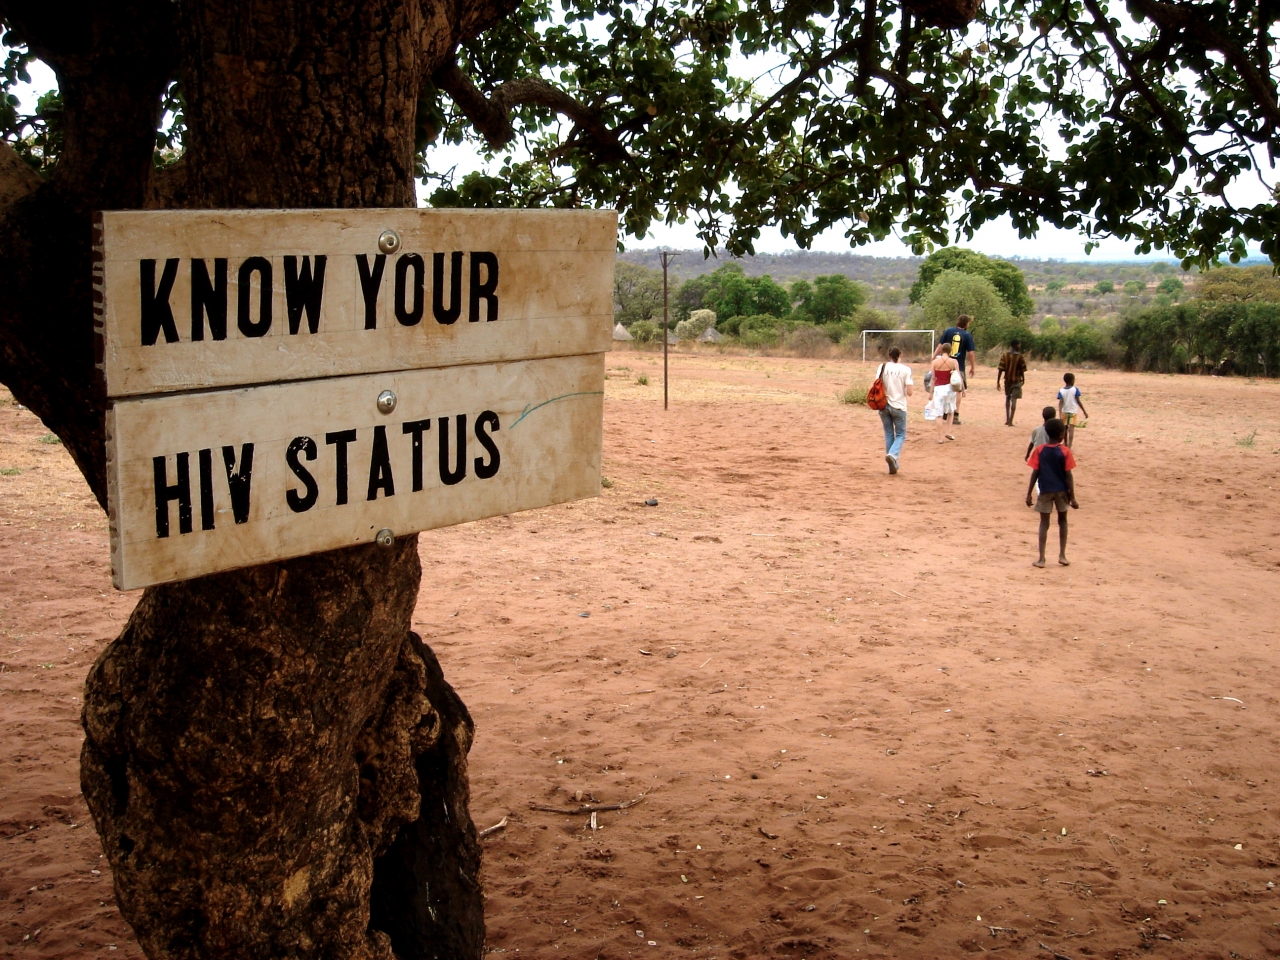 Ryzyko zakażenia HIV - gdzie szukać pomocy, gdzie się testować